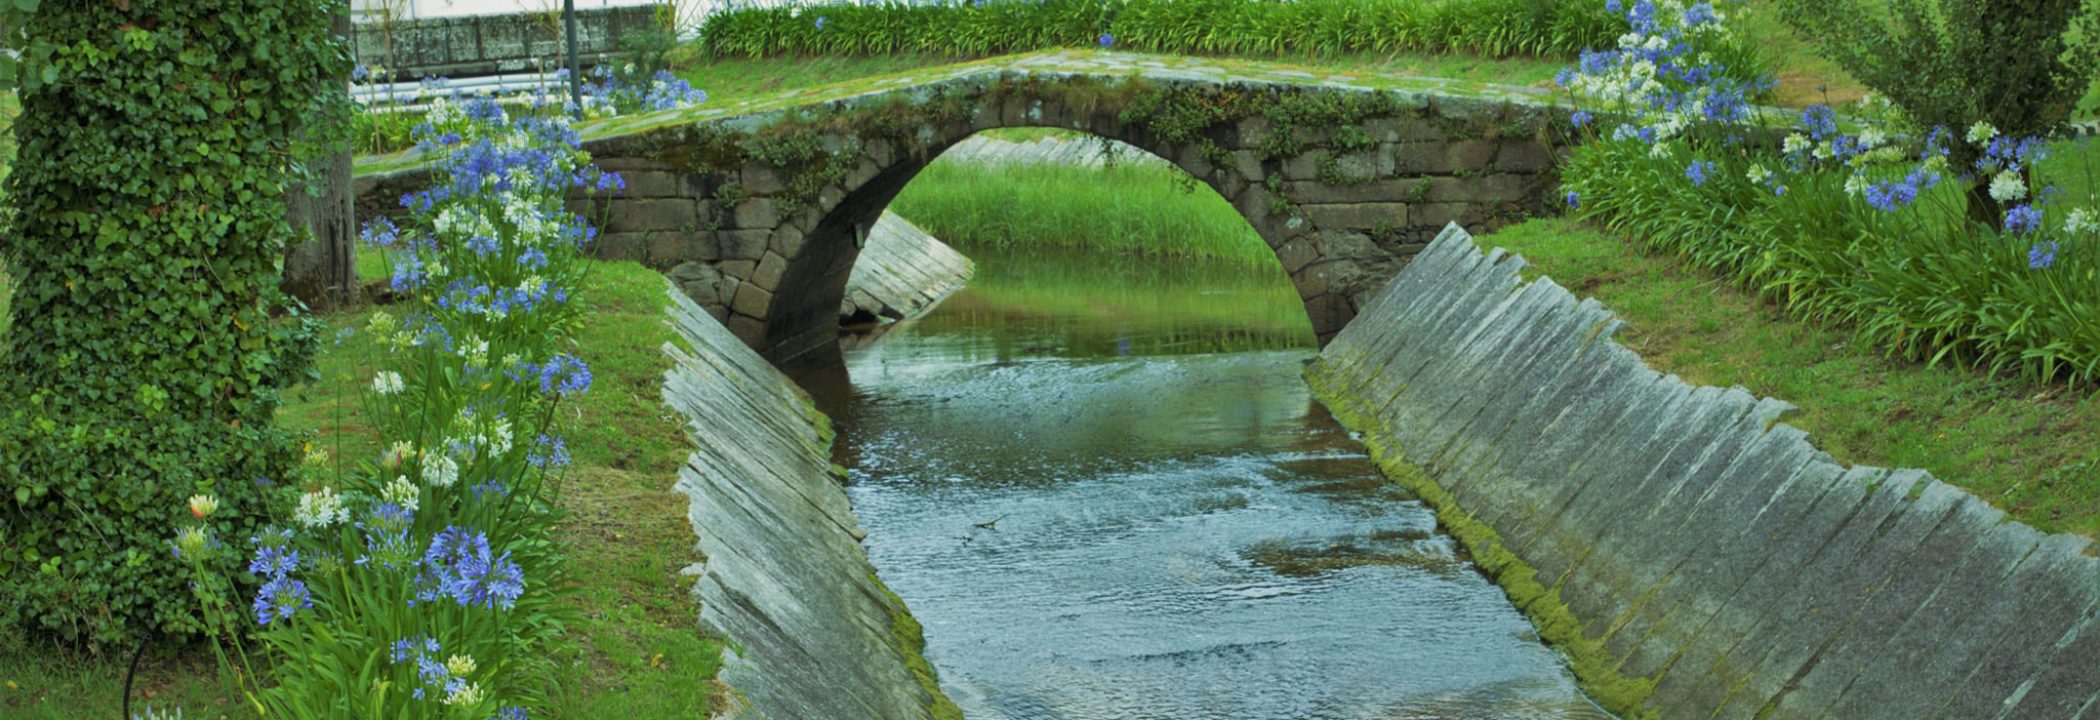 Ares Verde - Puente de la Ciscada